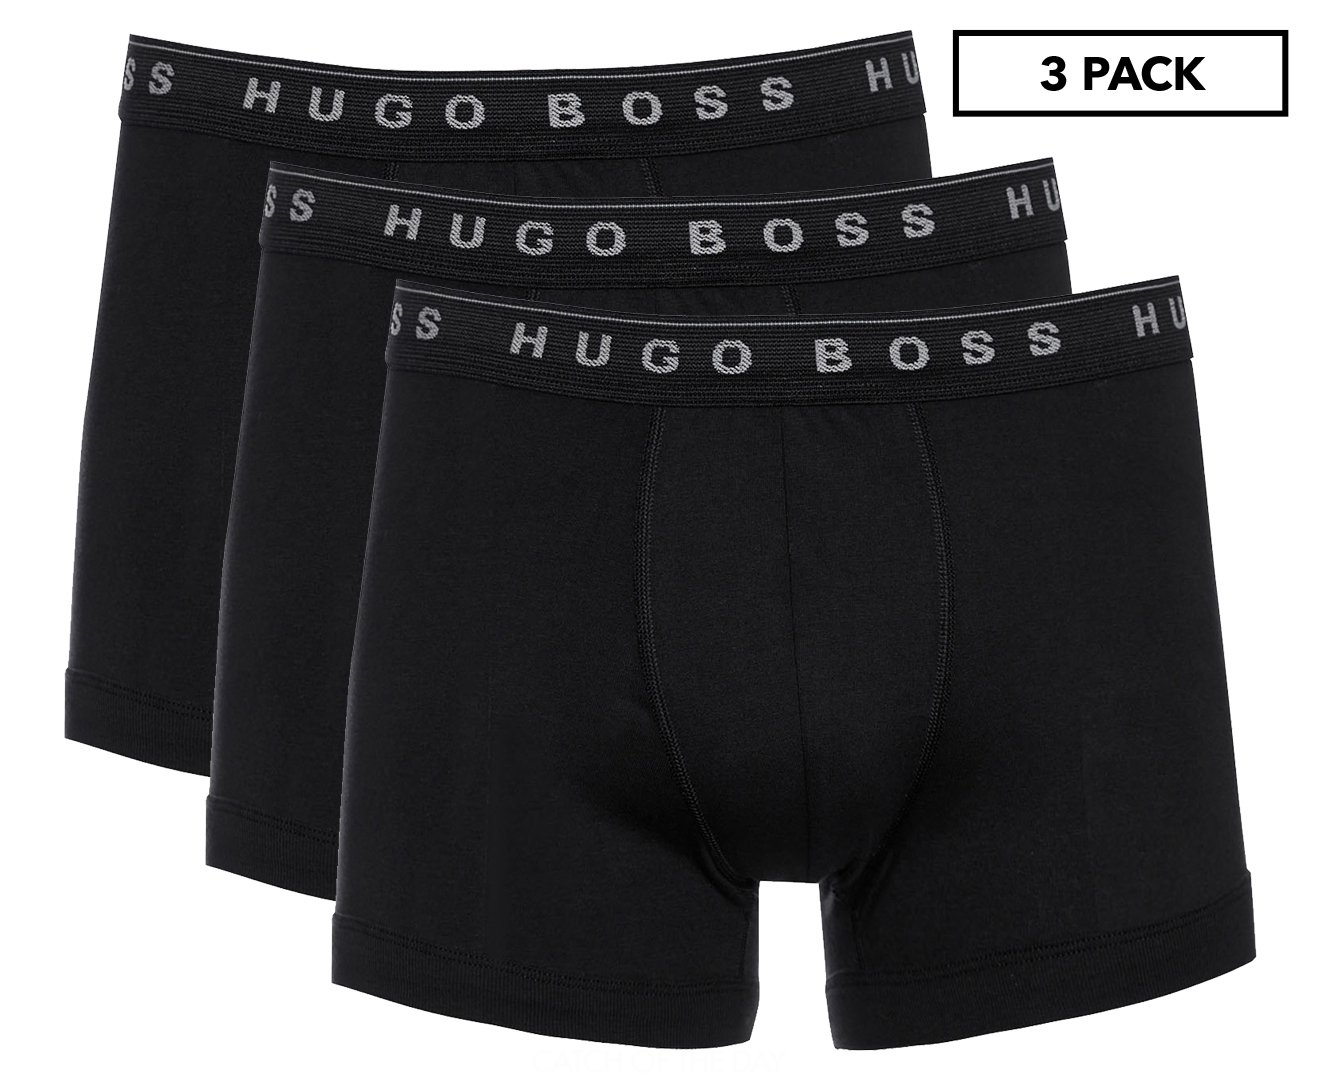 Hugo Boss Men's Boxer Briefs 3-Pack - Black | Catch.com.au